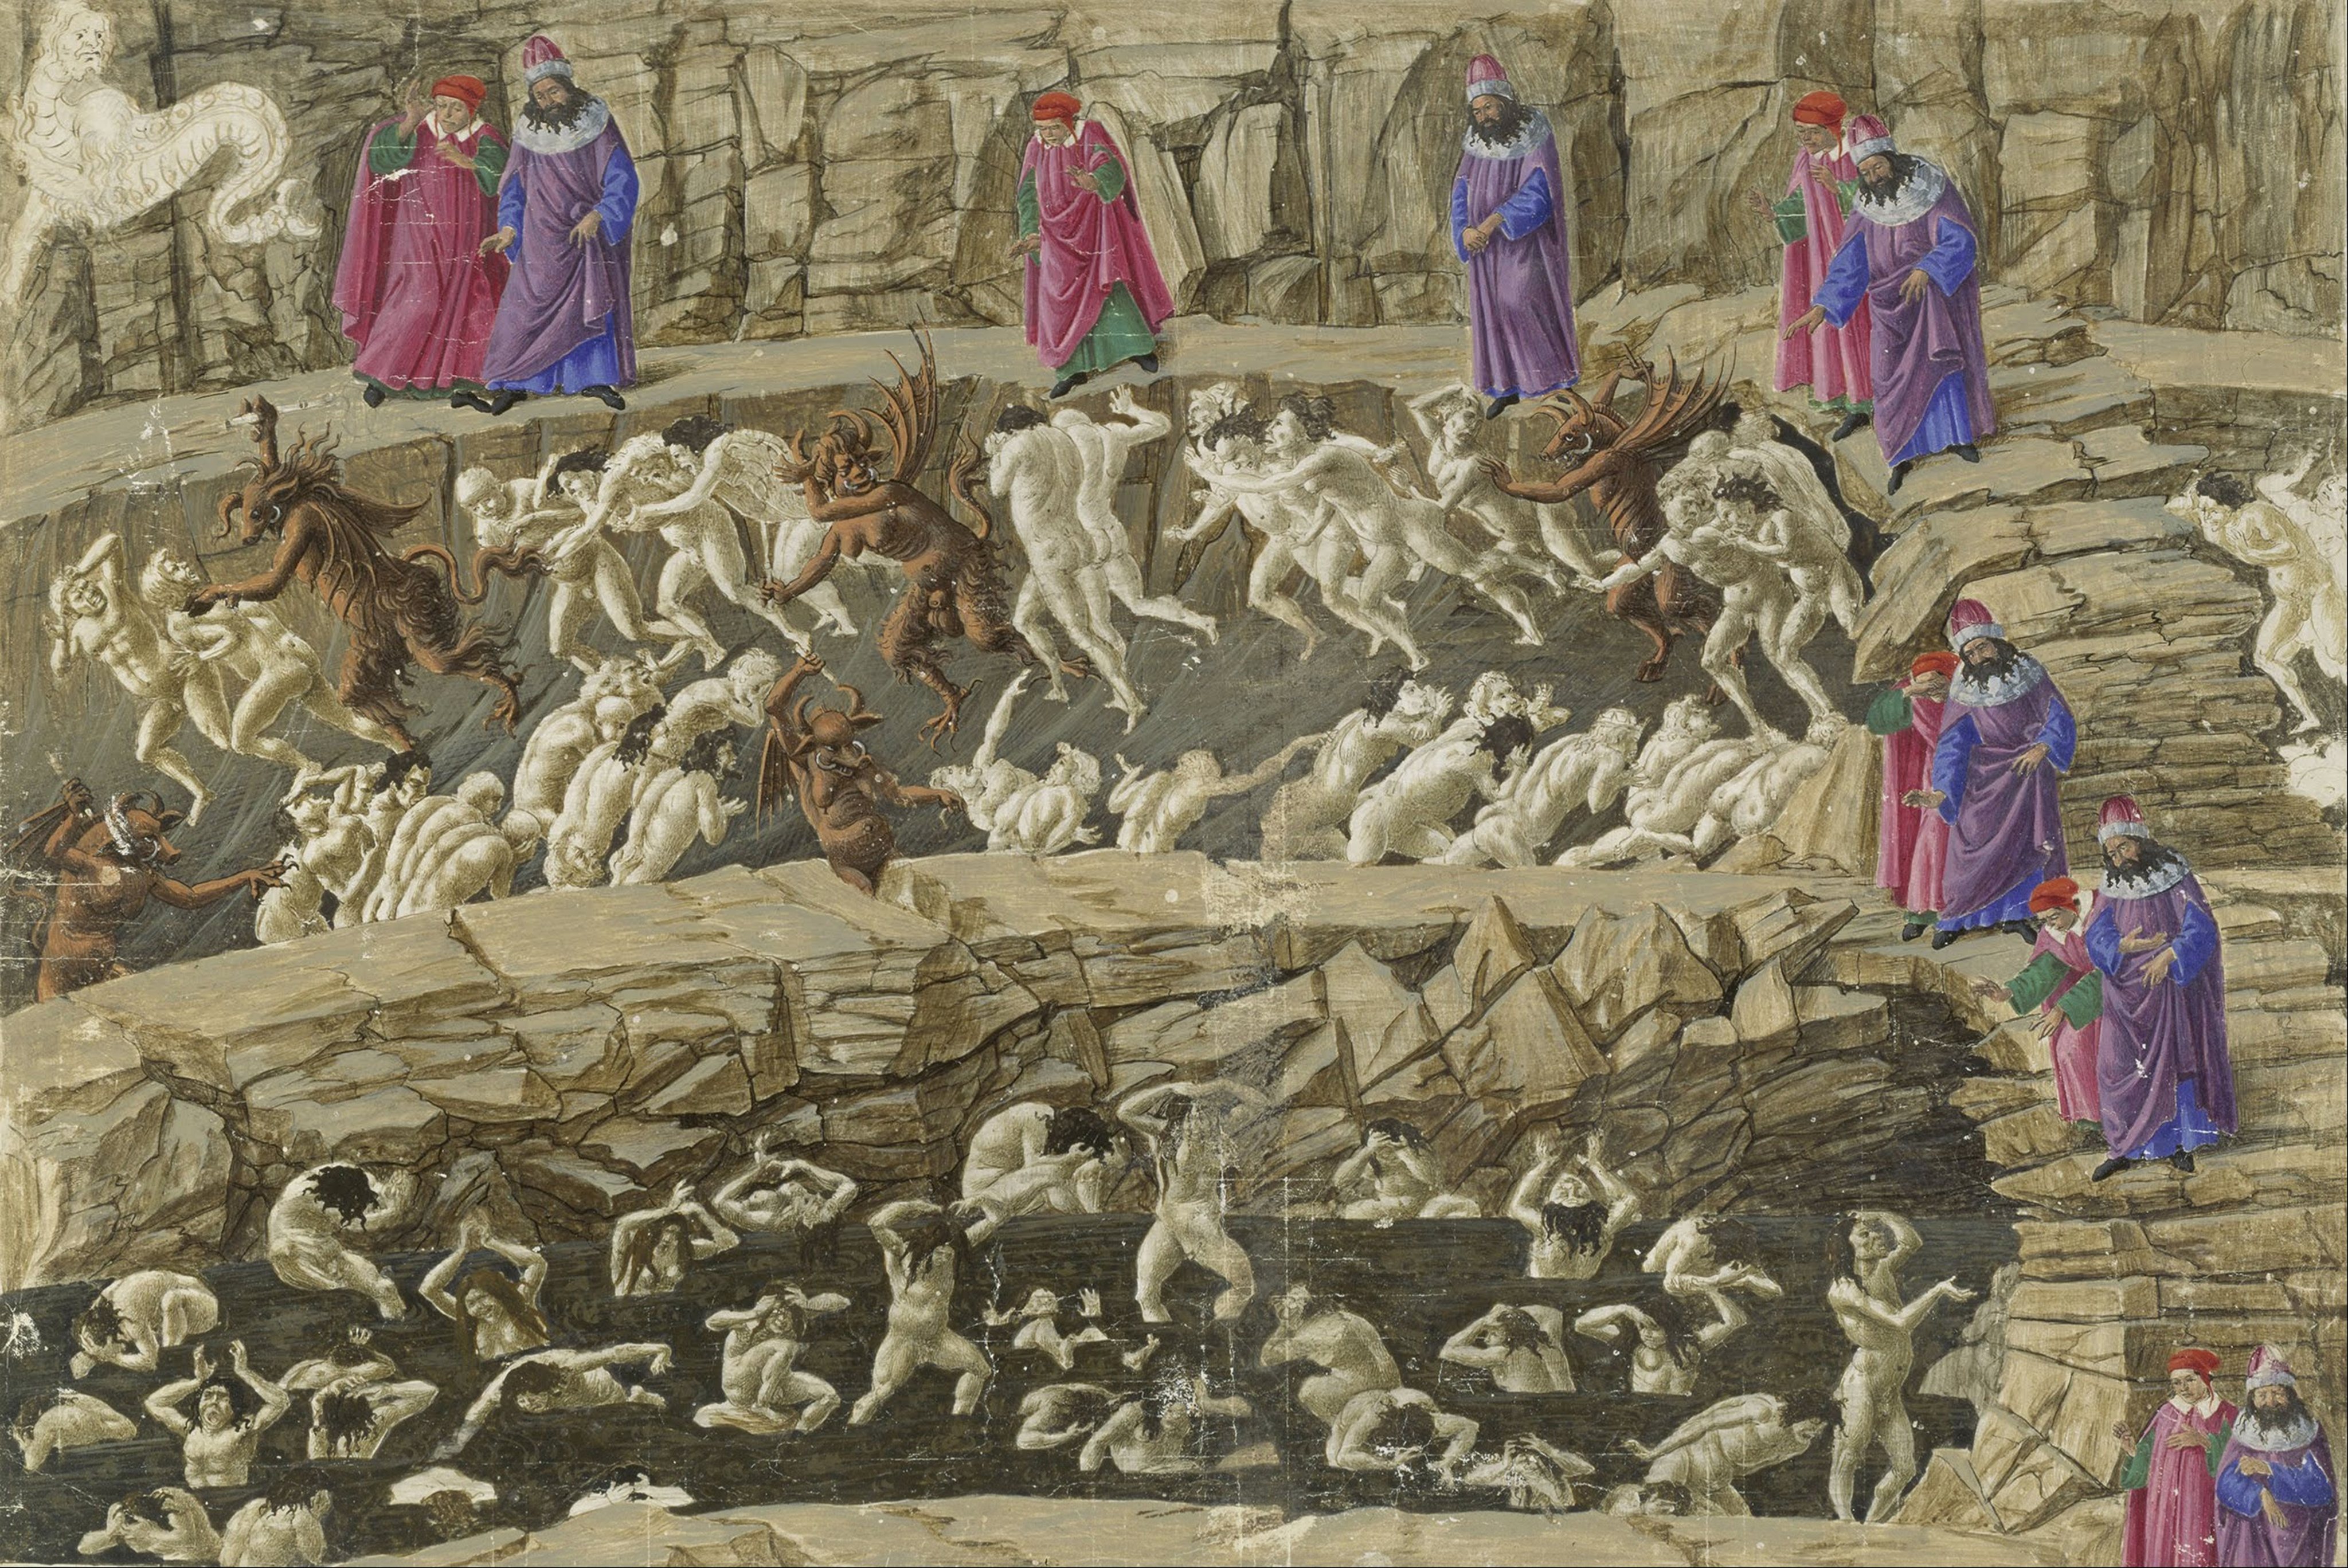 Inferno”, de Dante Alighieri, ganha tradução contemporânea para novos  leitores